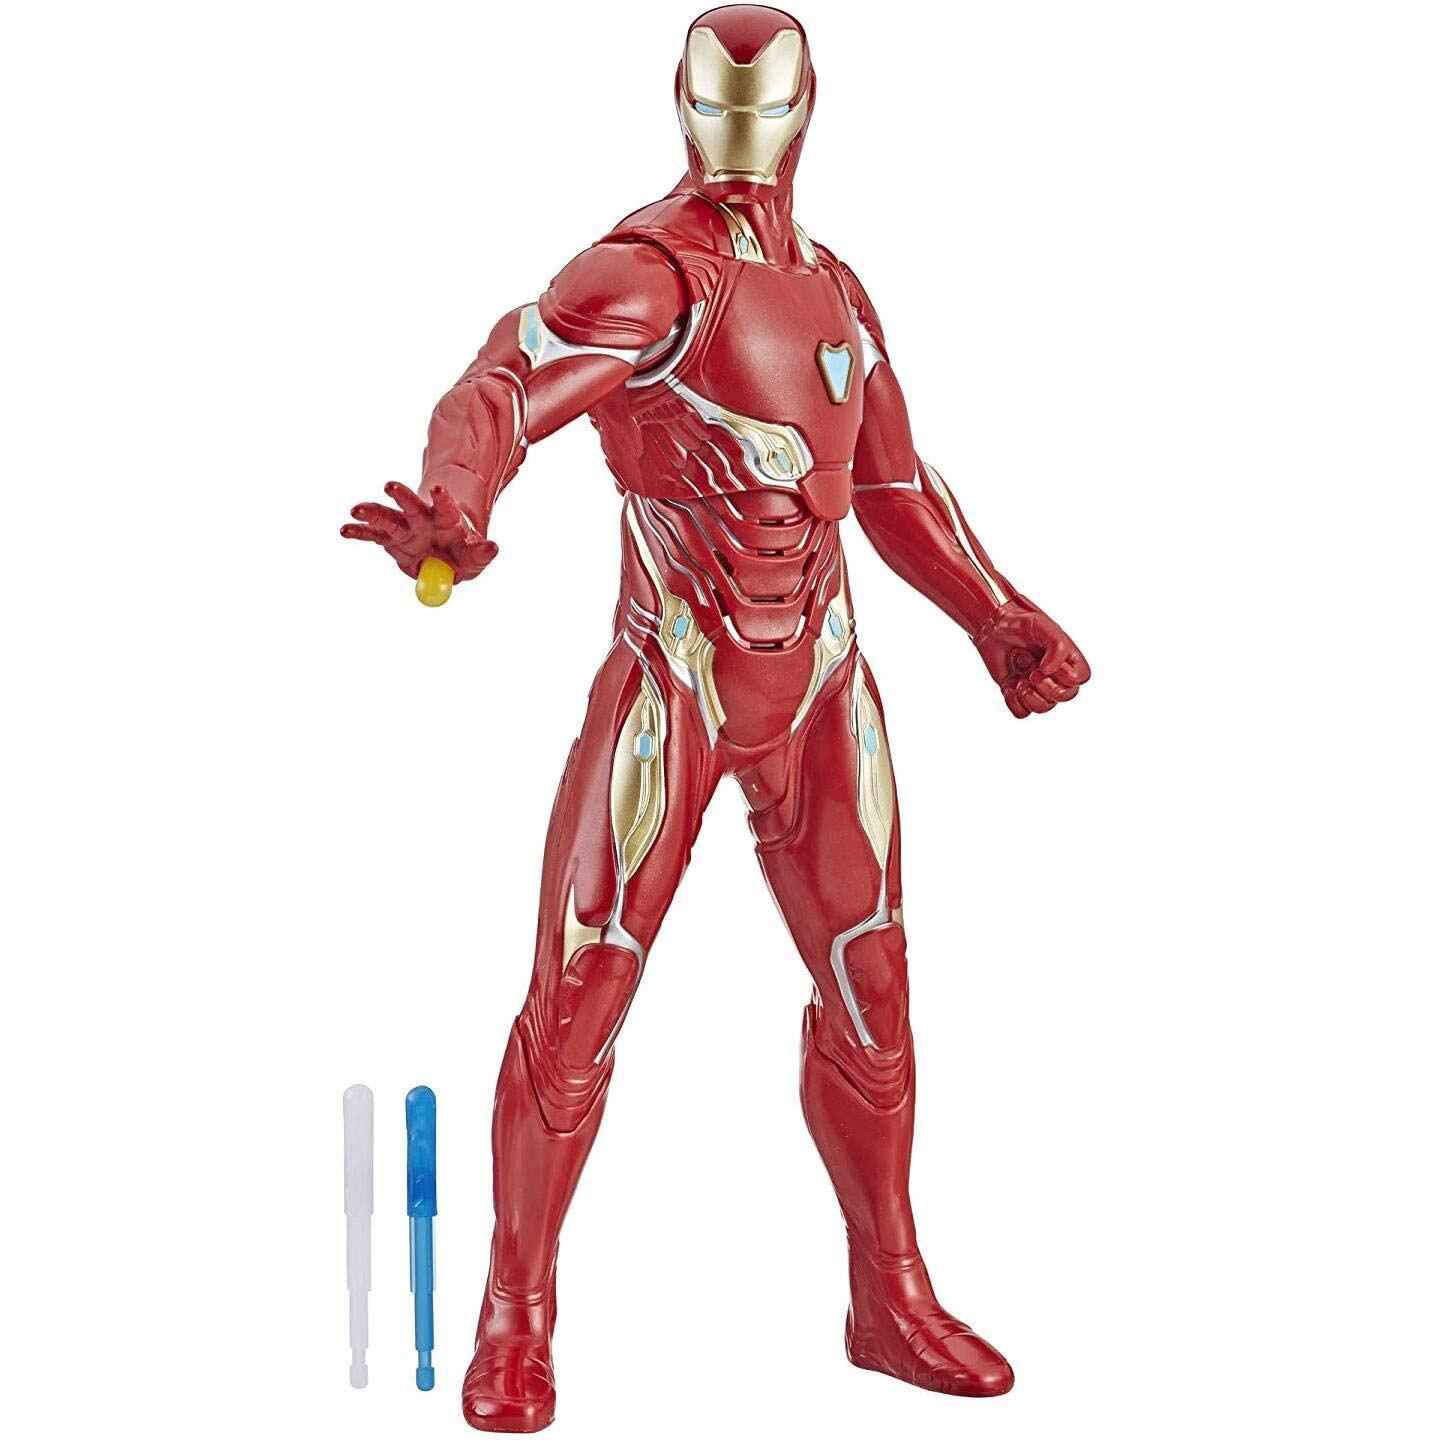 13in Marvel Avengers Endgame Repulsor Blast Iron Man Figure for $13.54